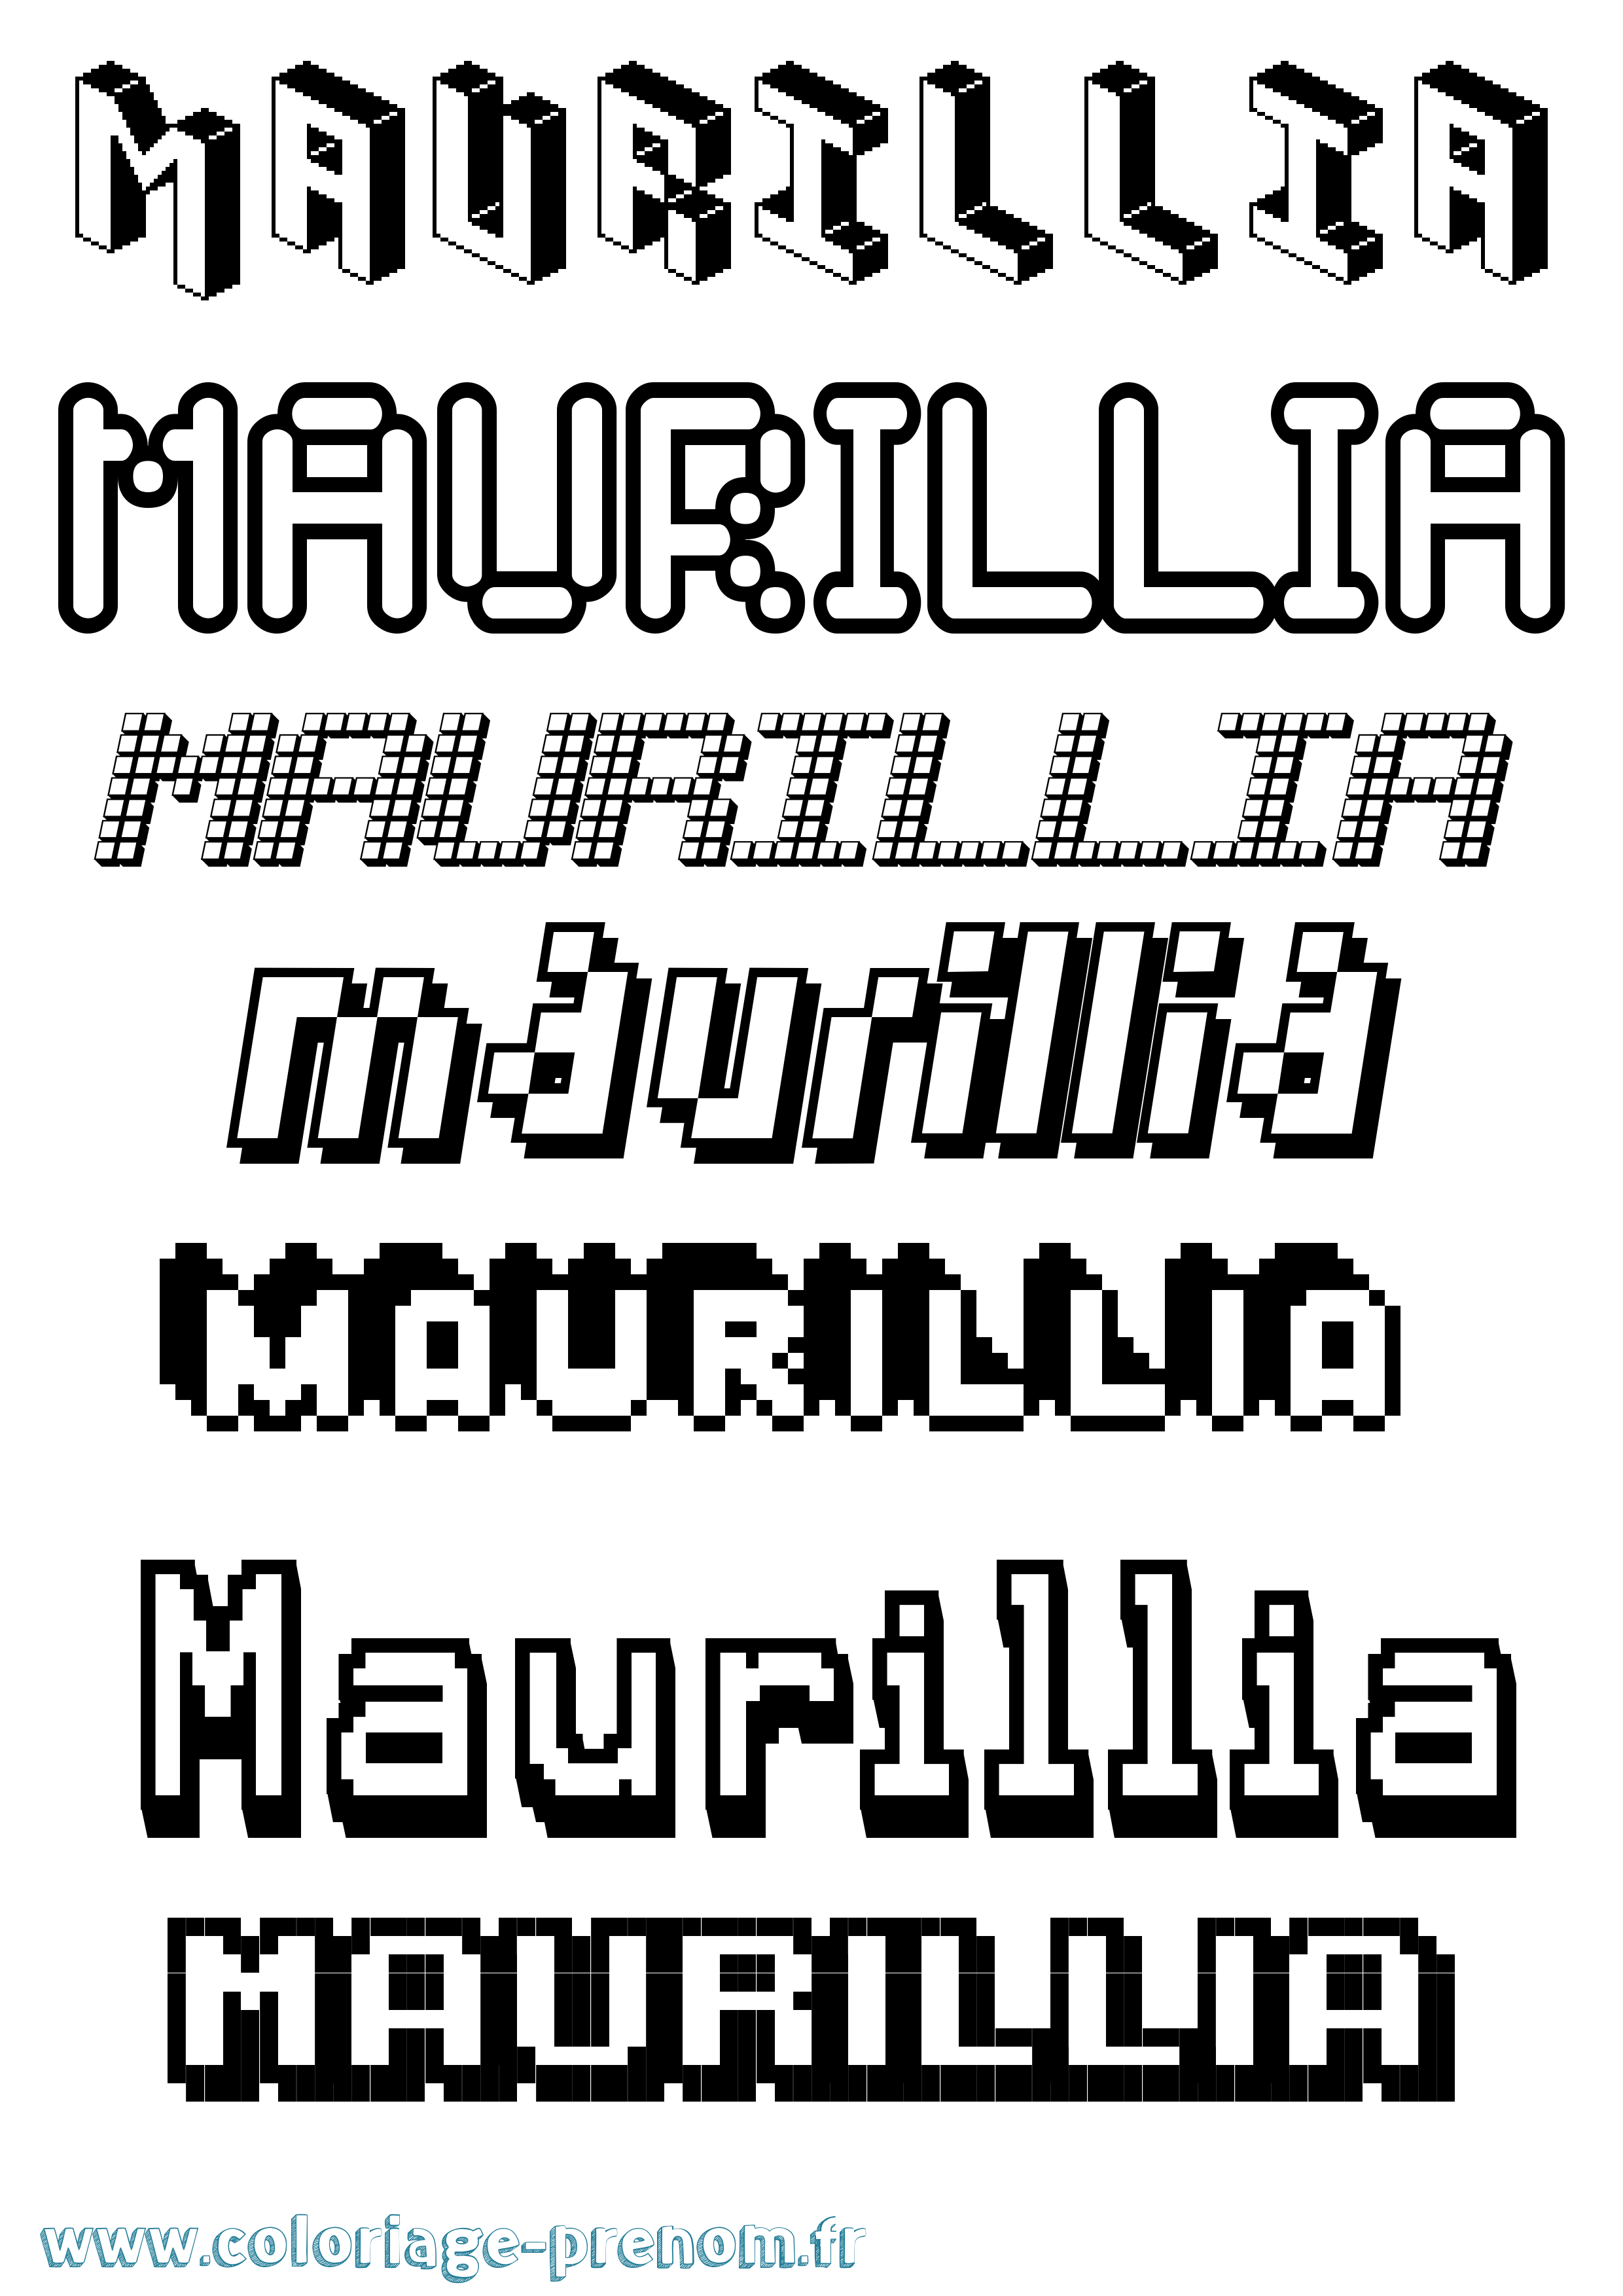 Coloriage prénom Maurillia Pixel